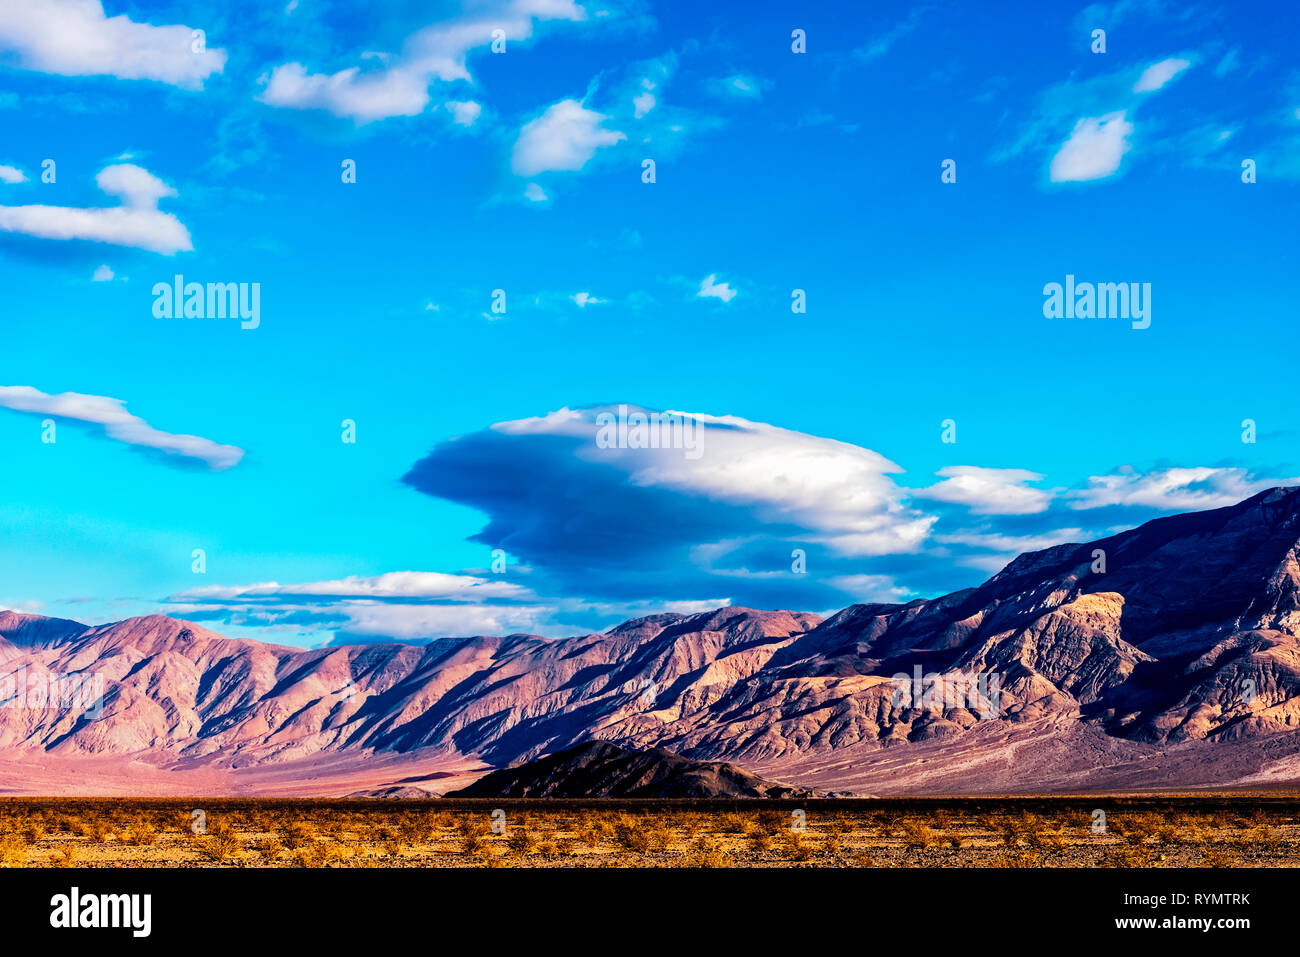 La vallée du désert avec des buissons morts et de montagnes stériles sous s ciel bleu avec des nuages. Banque D'Images